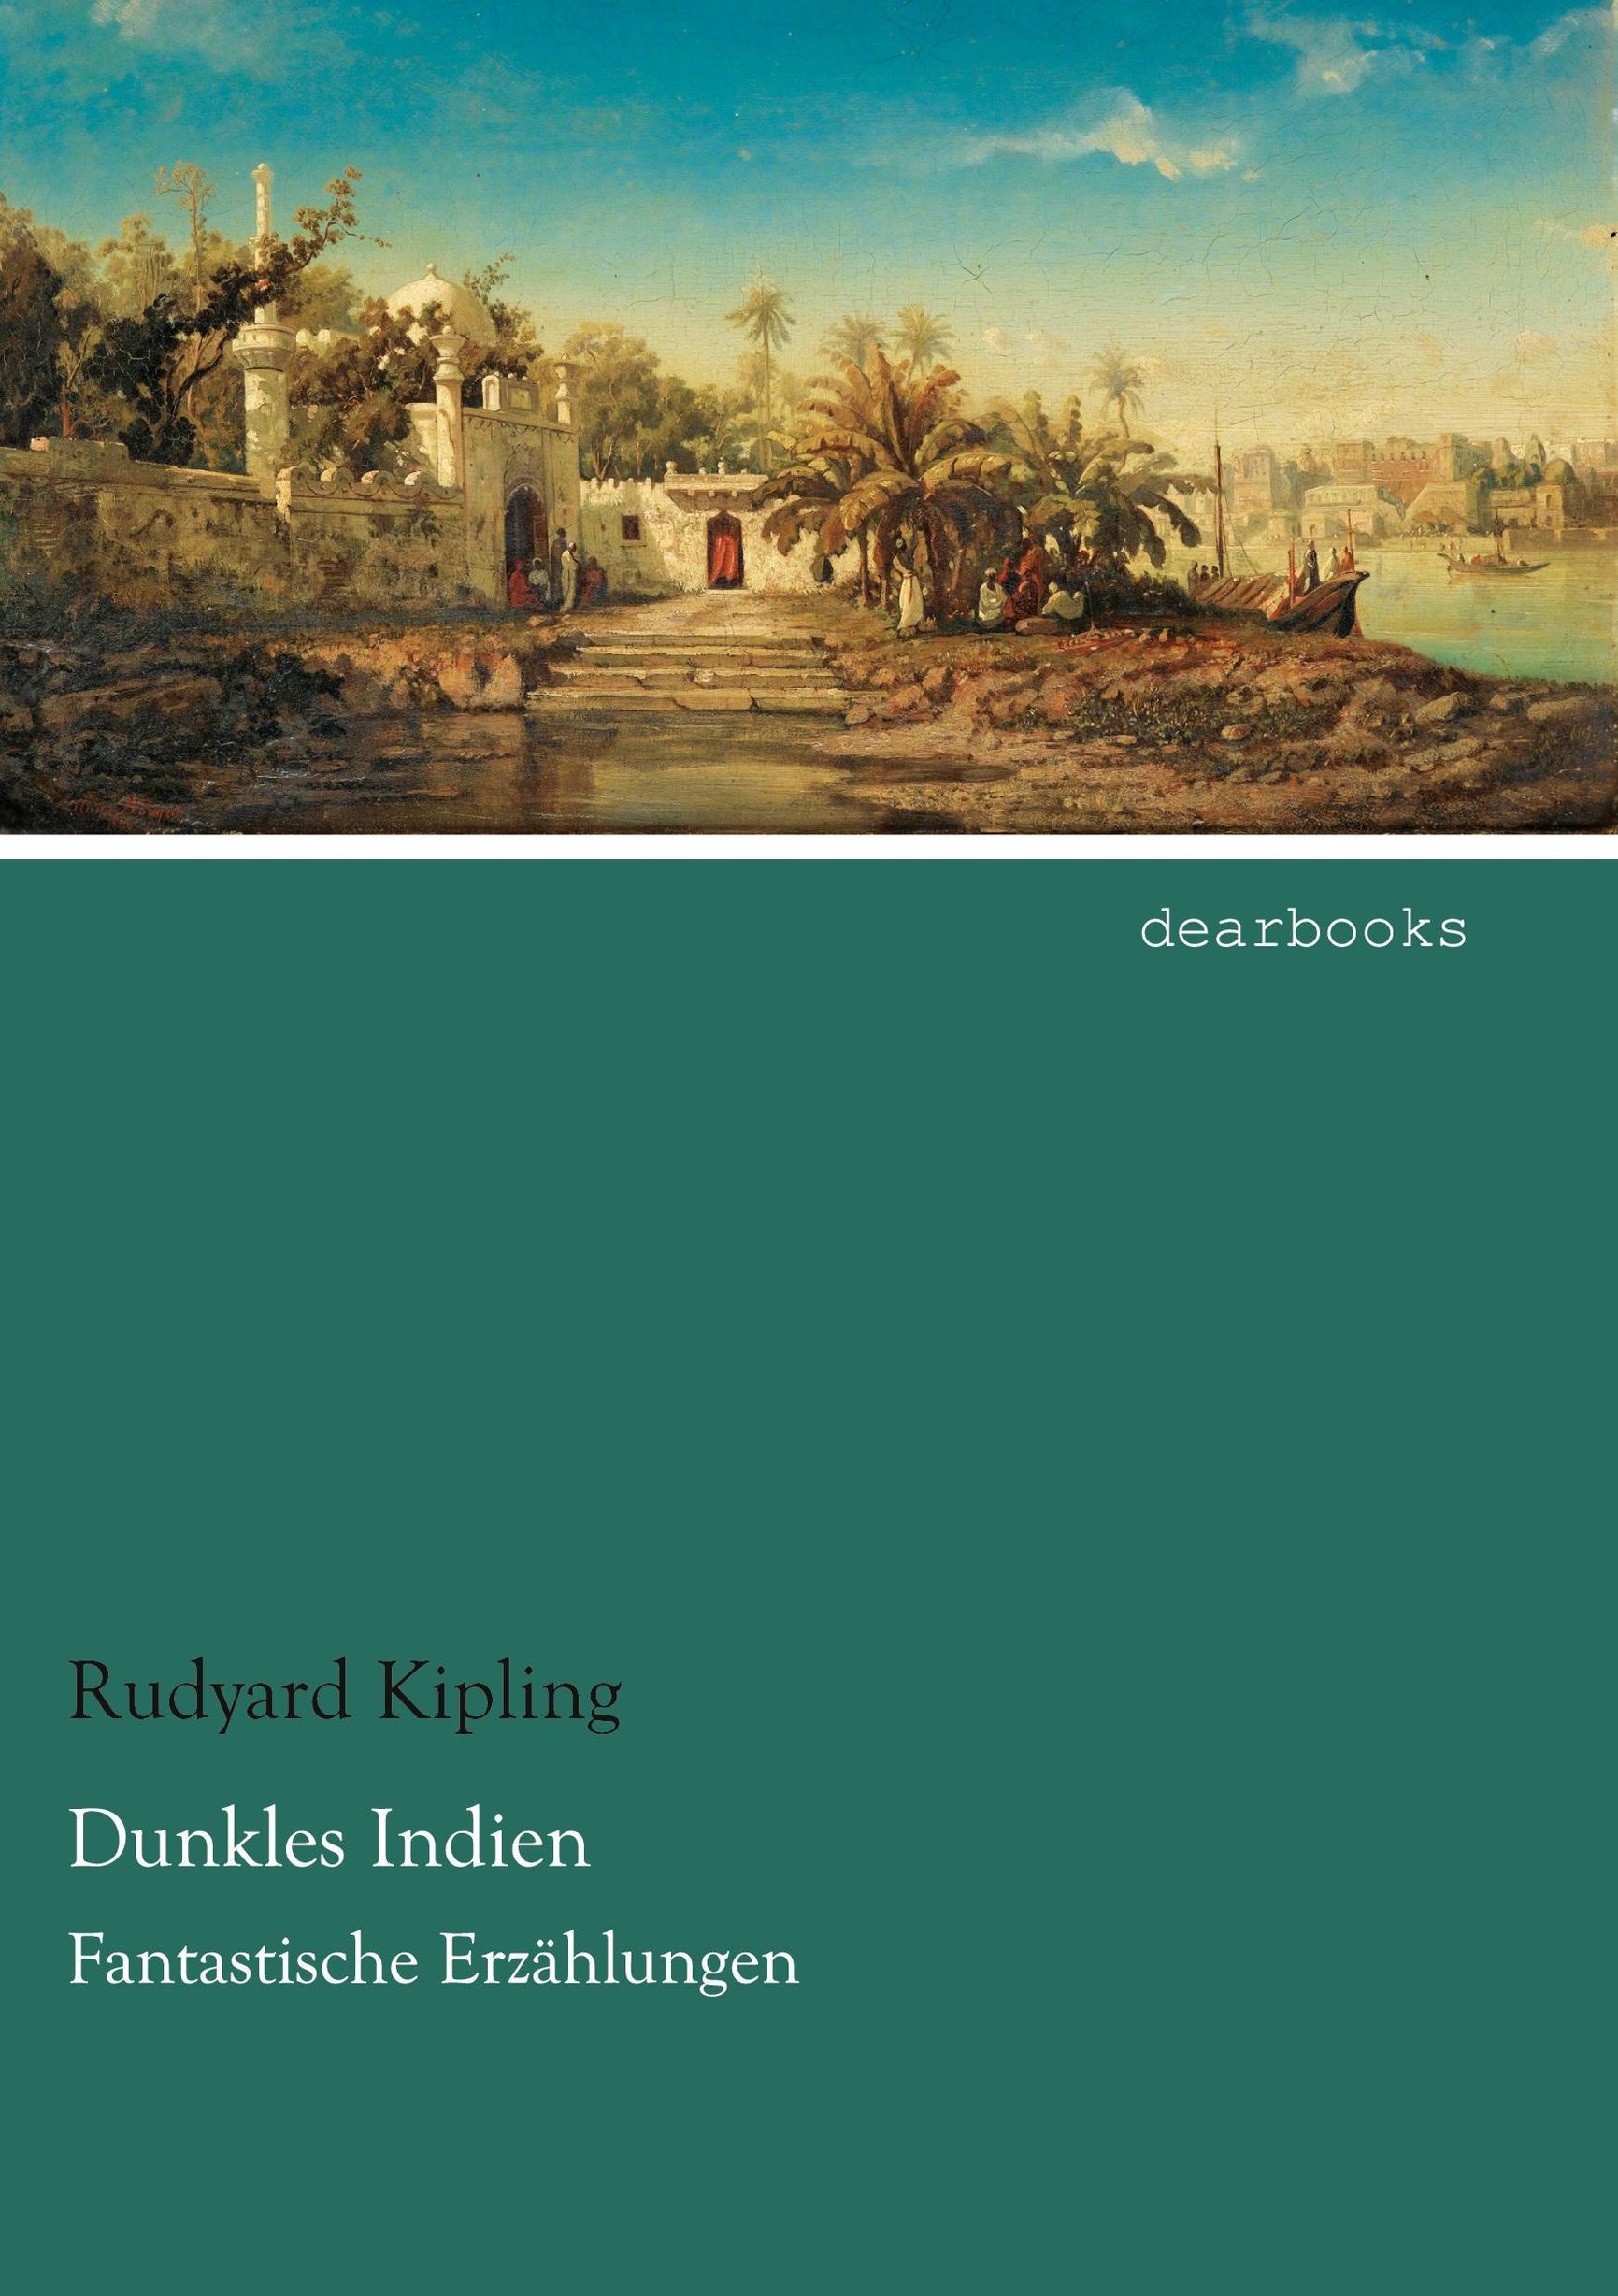 Dunkles Indien Buch von Rudyard Kipling versandkostenfrei bei Weltbild.de